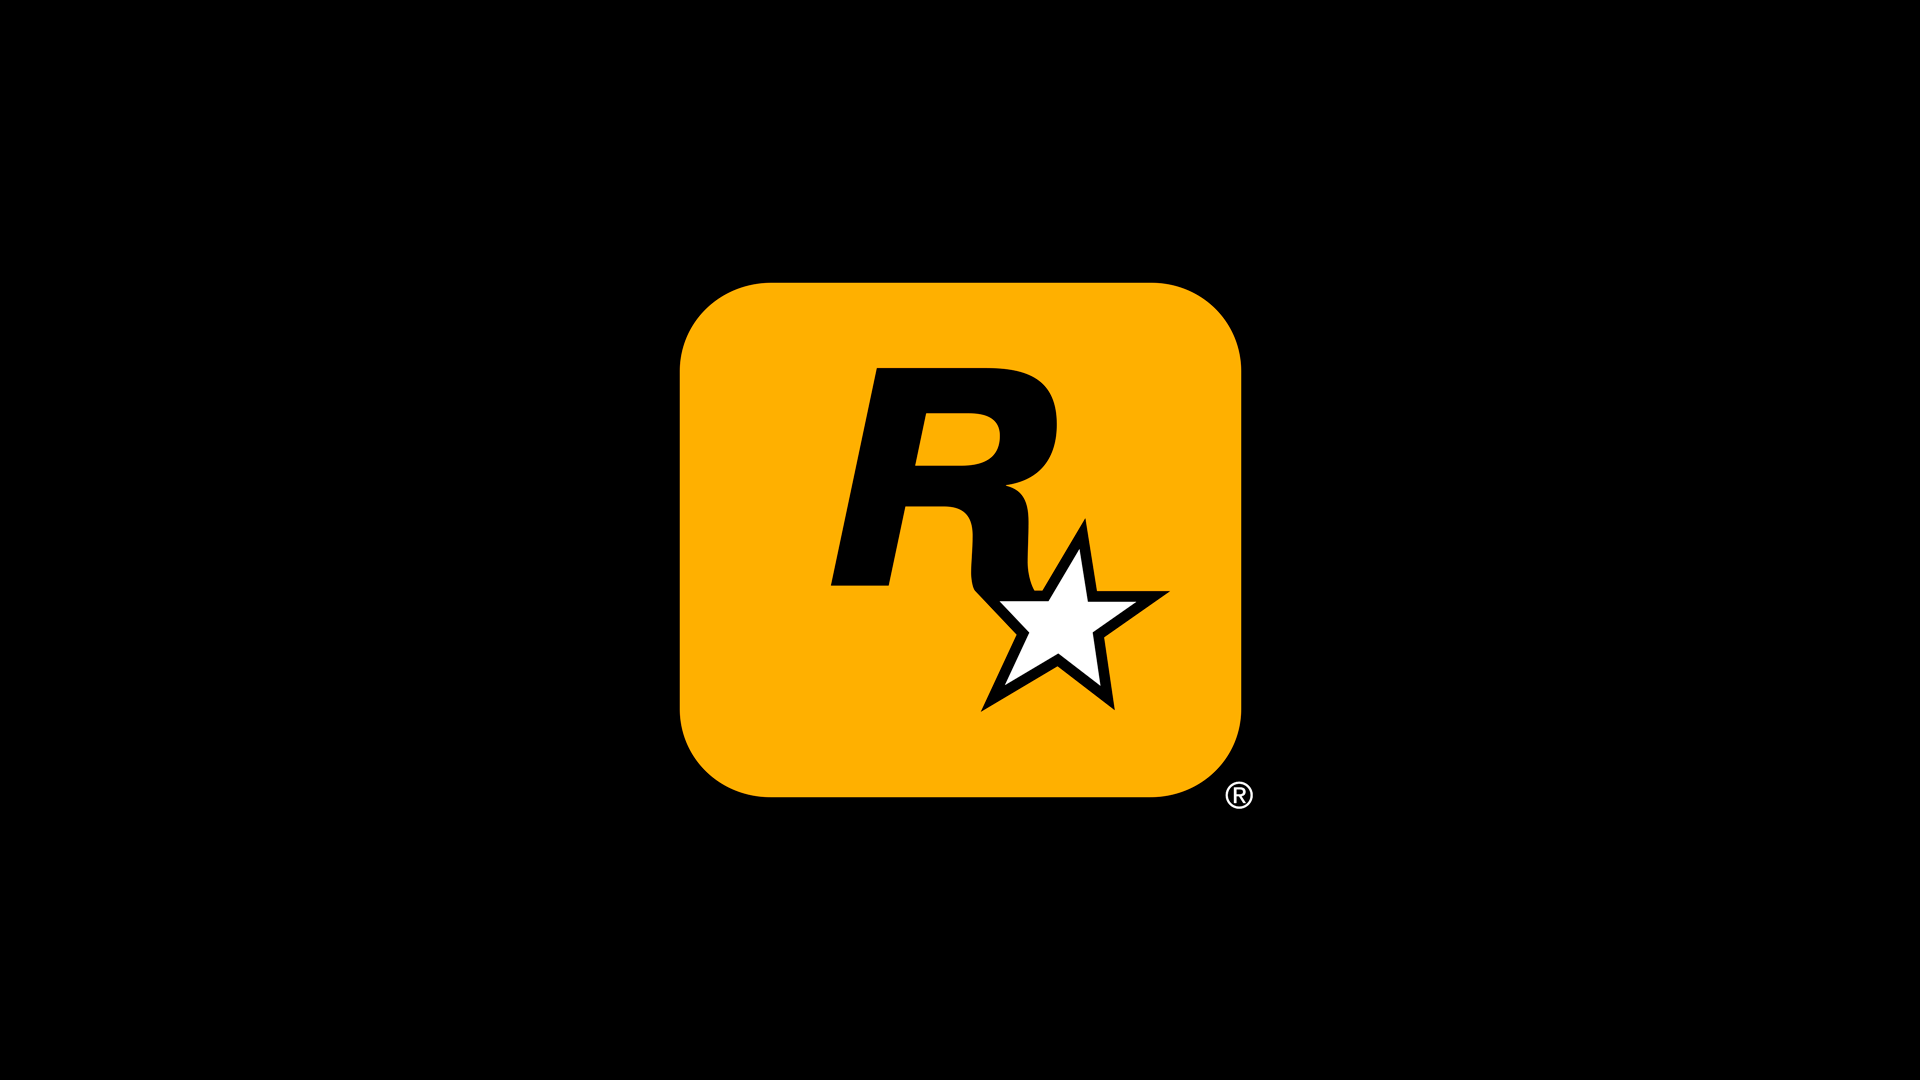 Immagine pubblicata in relazione al seguente contenuto: Rockstar Games ufficializza la pubblicazione del trailer di Grand Theft Auto VI | Nome immagine: news35008_Rockstar-Games_1.png